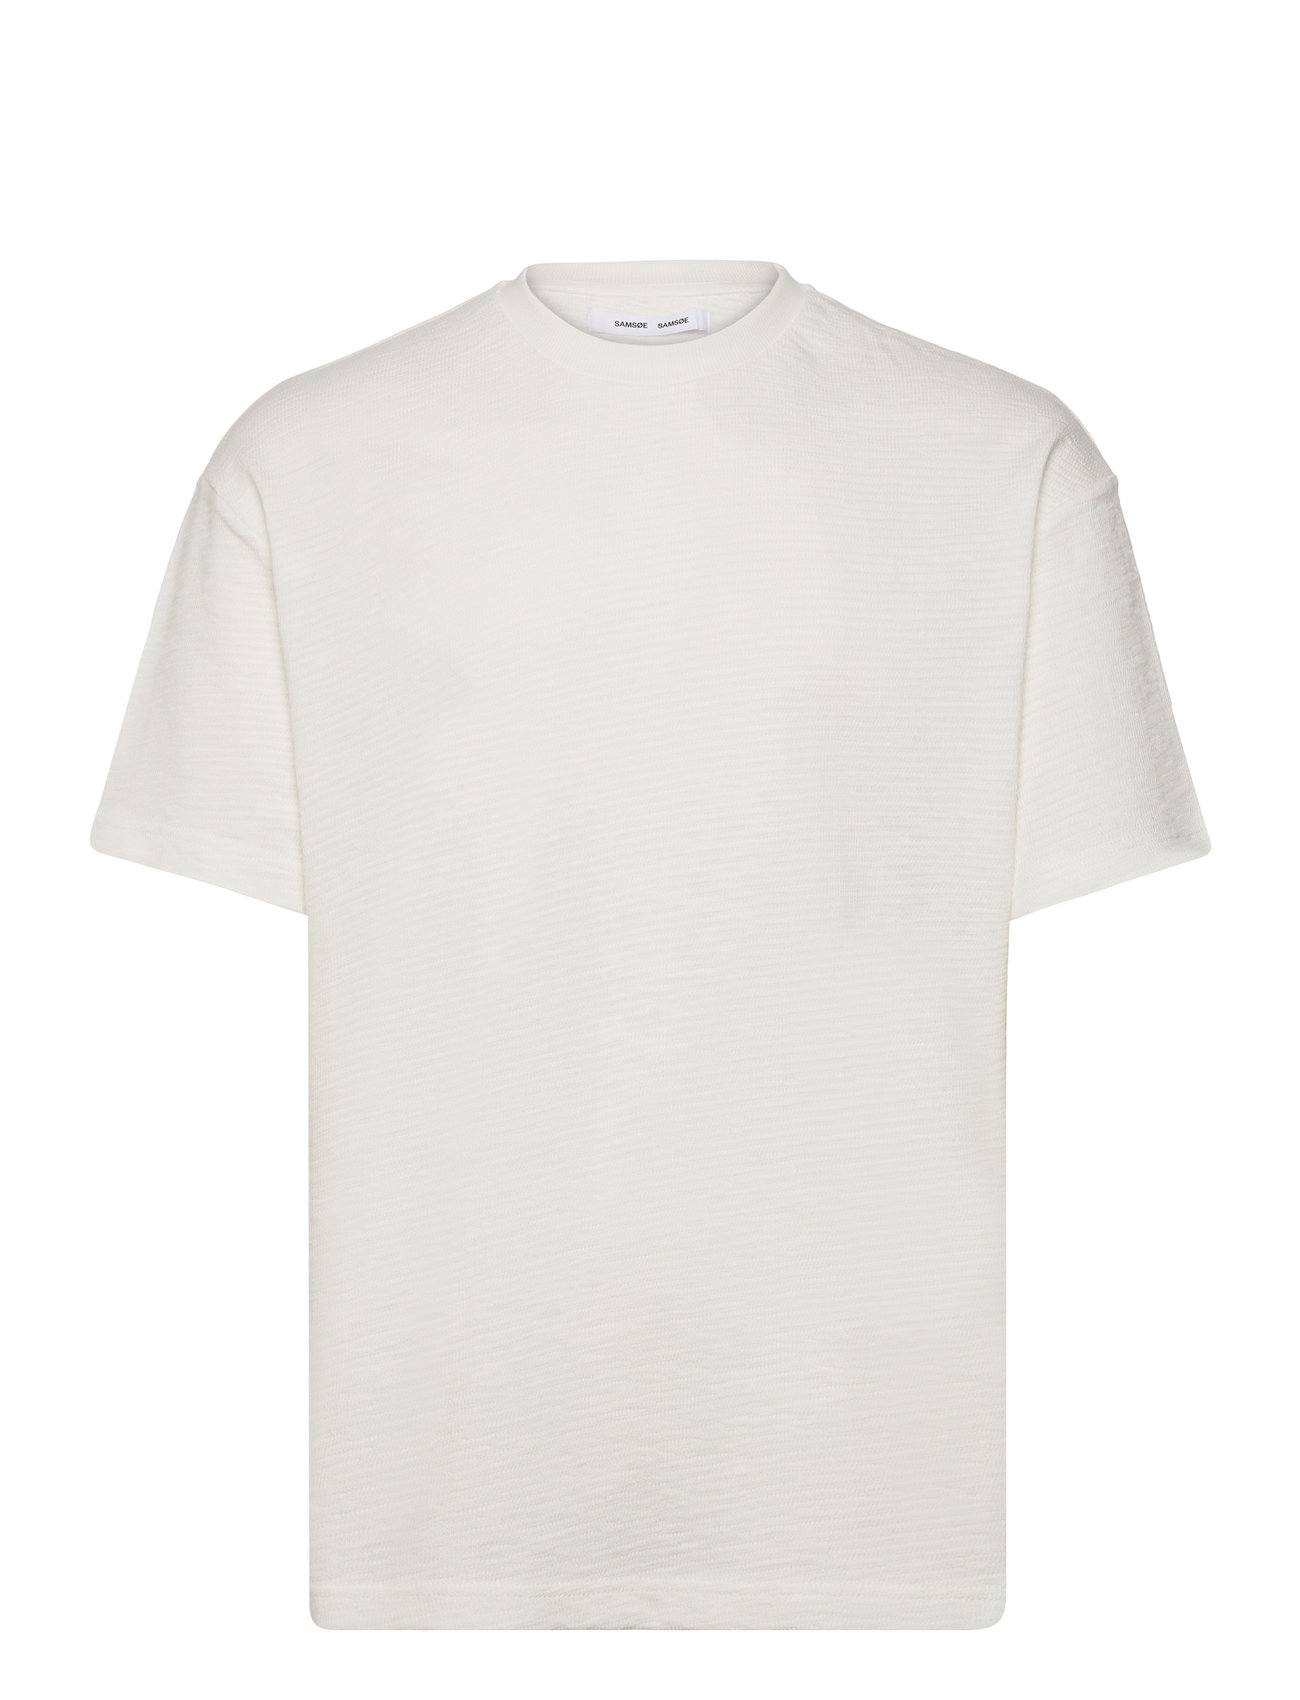 Sakoen T-Shirt 15238 Designers T-Kortærmet Skjorte White Samsøe Samsøe